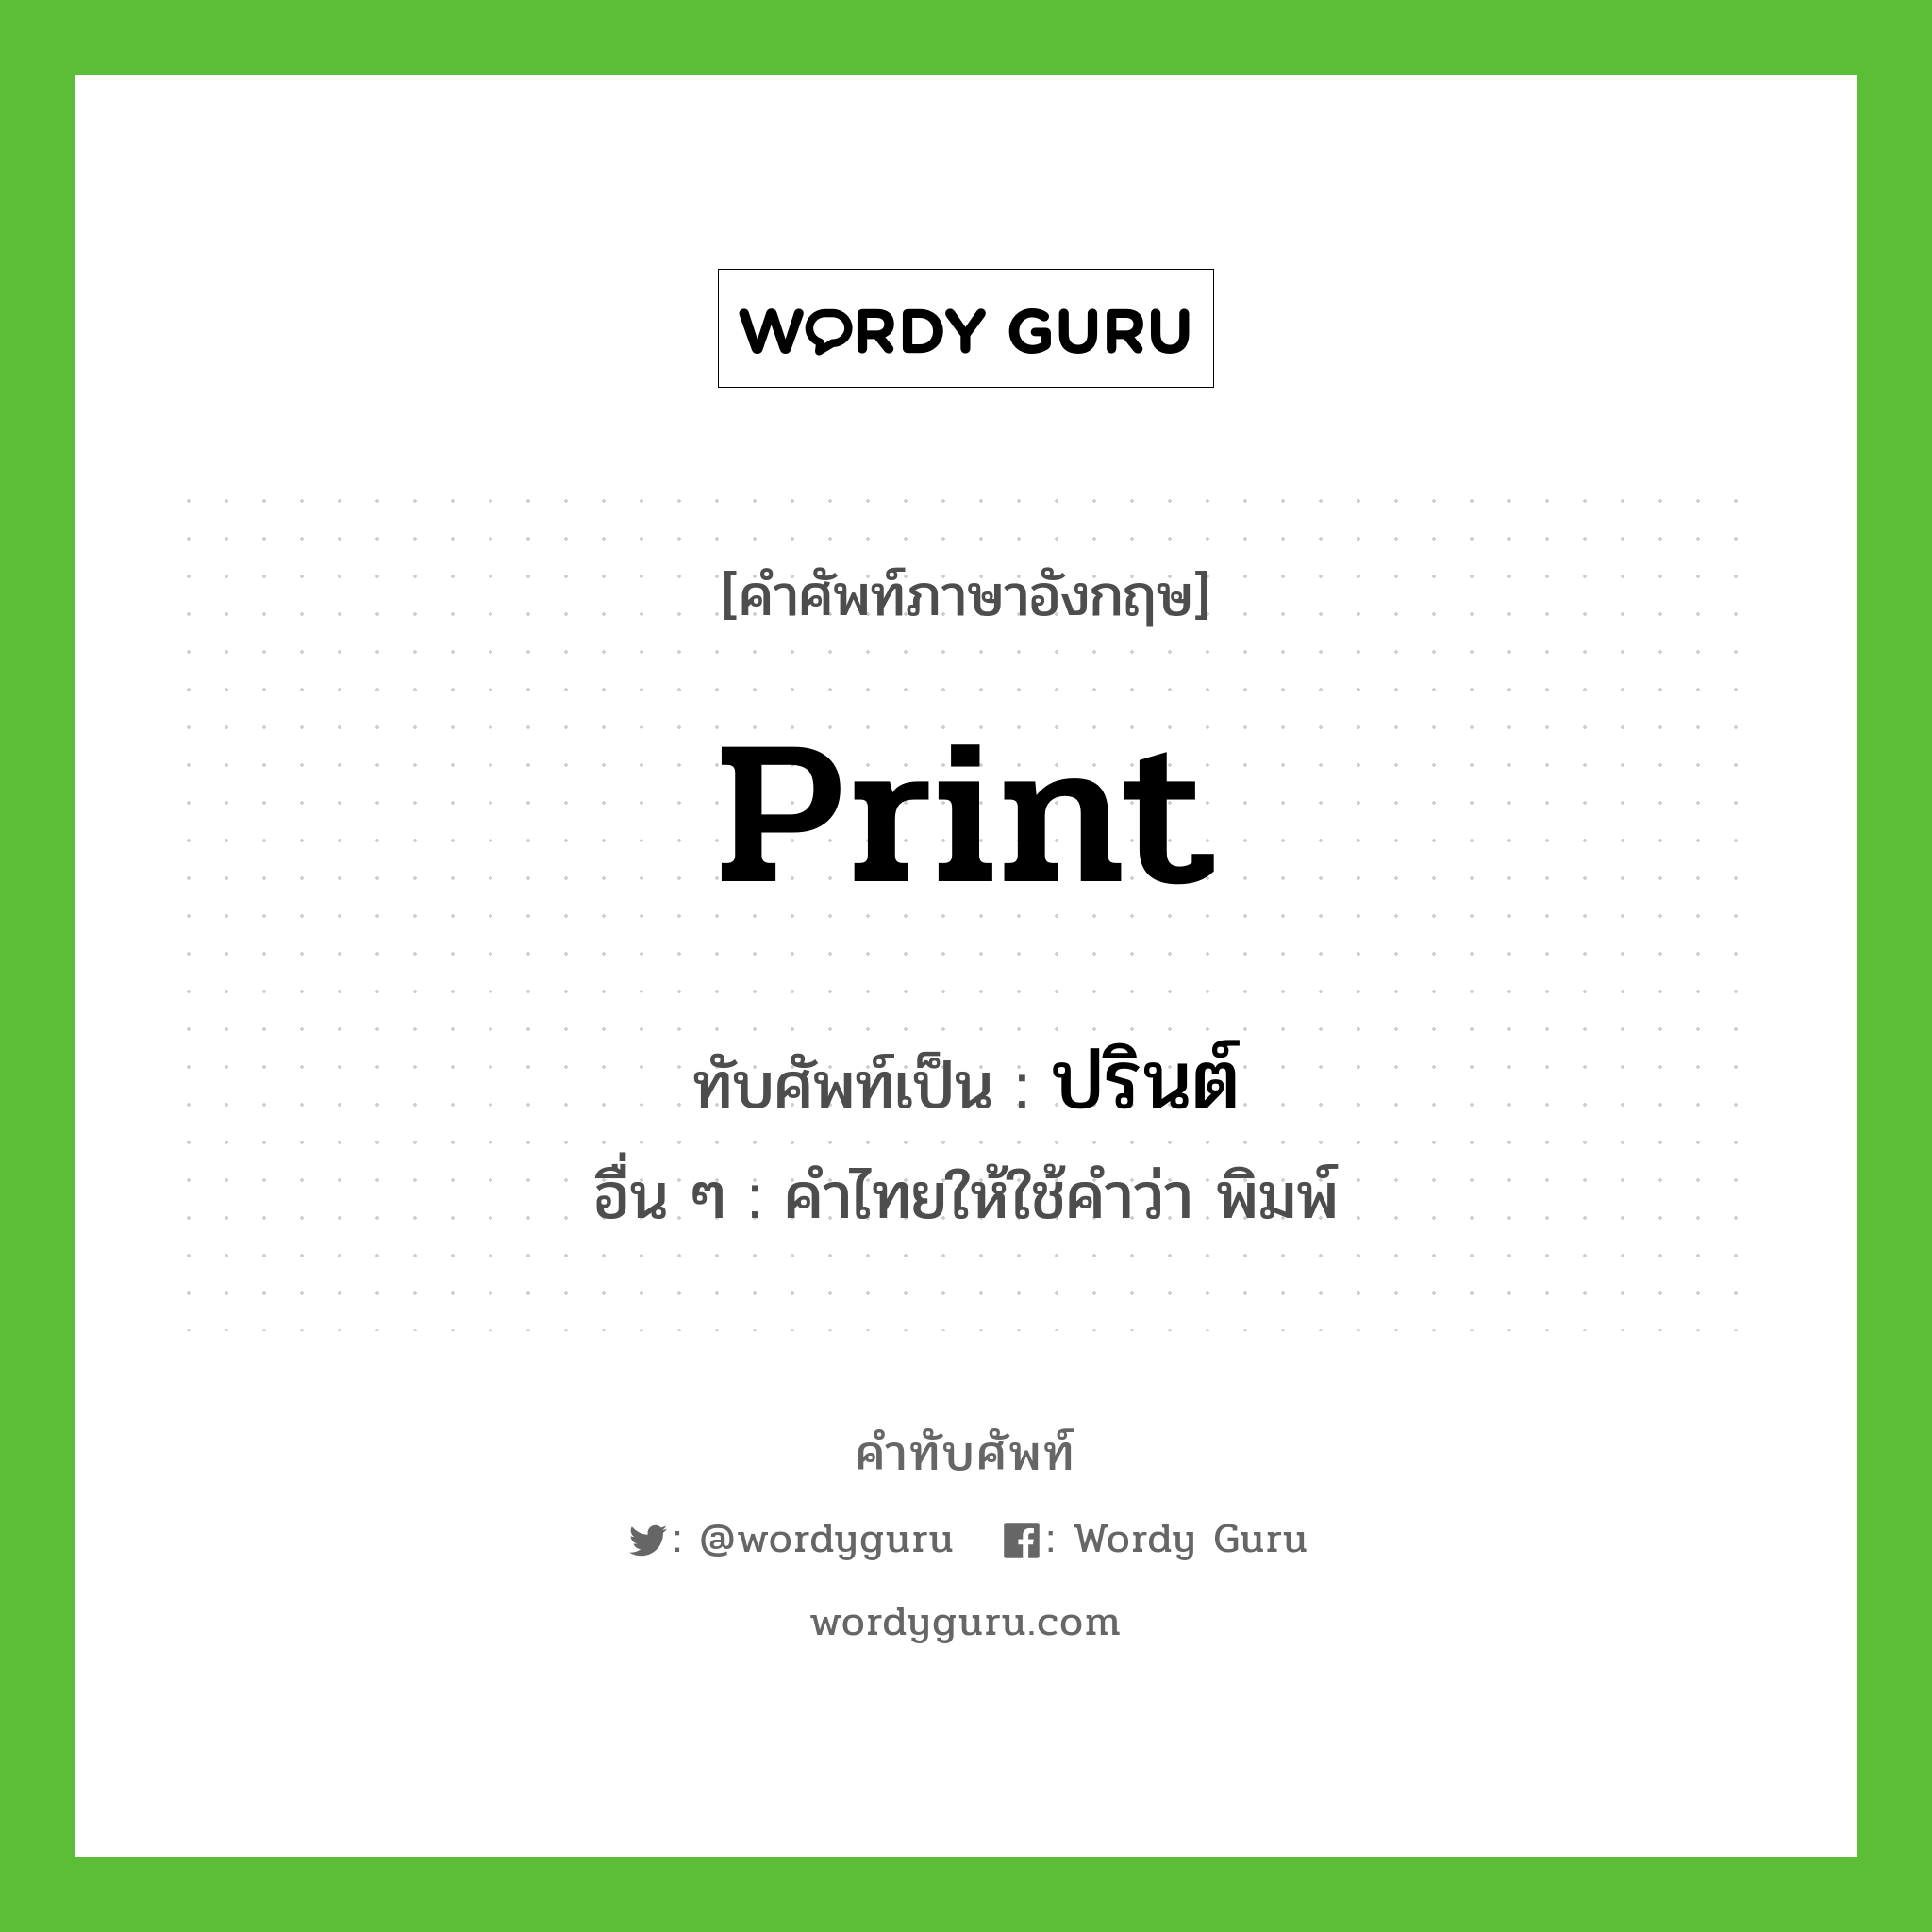 print เขียนเป็นคำไทยว่าอะไร?, คำศัพท์ภาษาอังกฤษ print ทับศัพท์เป็น ปรินต์ อื่น ๆ คำไทยให้ใช้คำว่า พิมพ์